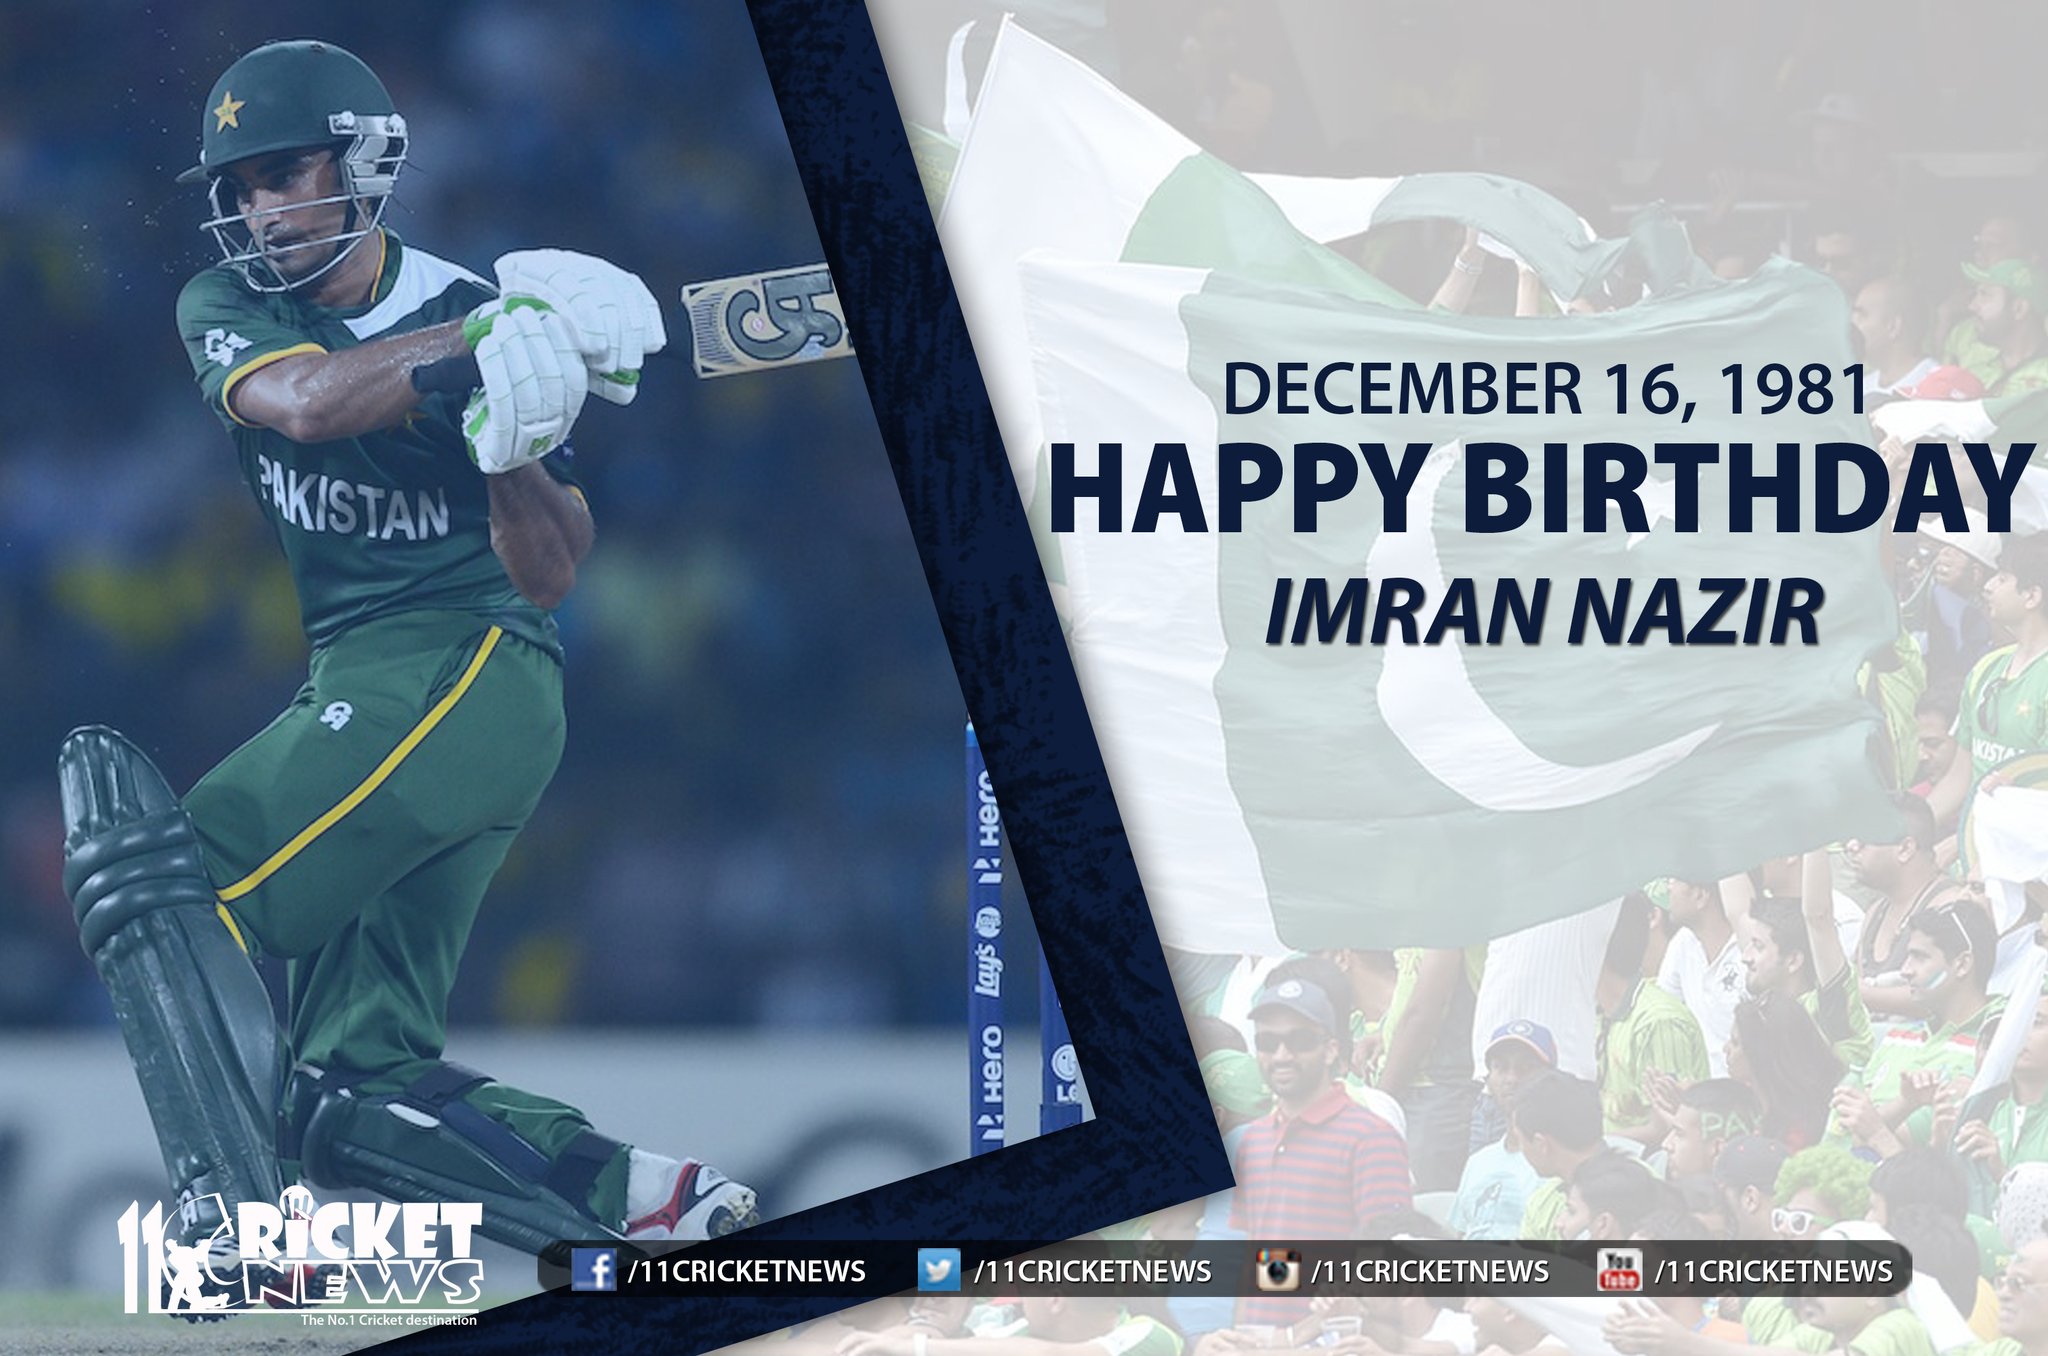 Happy Birthday \" Imran Nazir\" He turns 38 today 